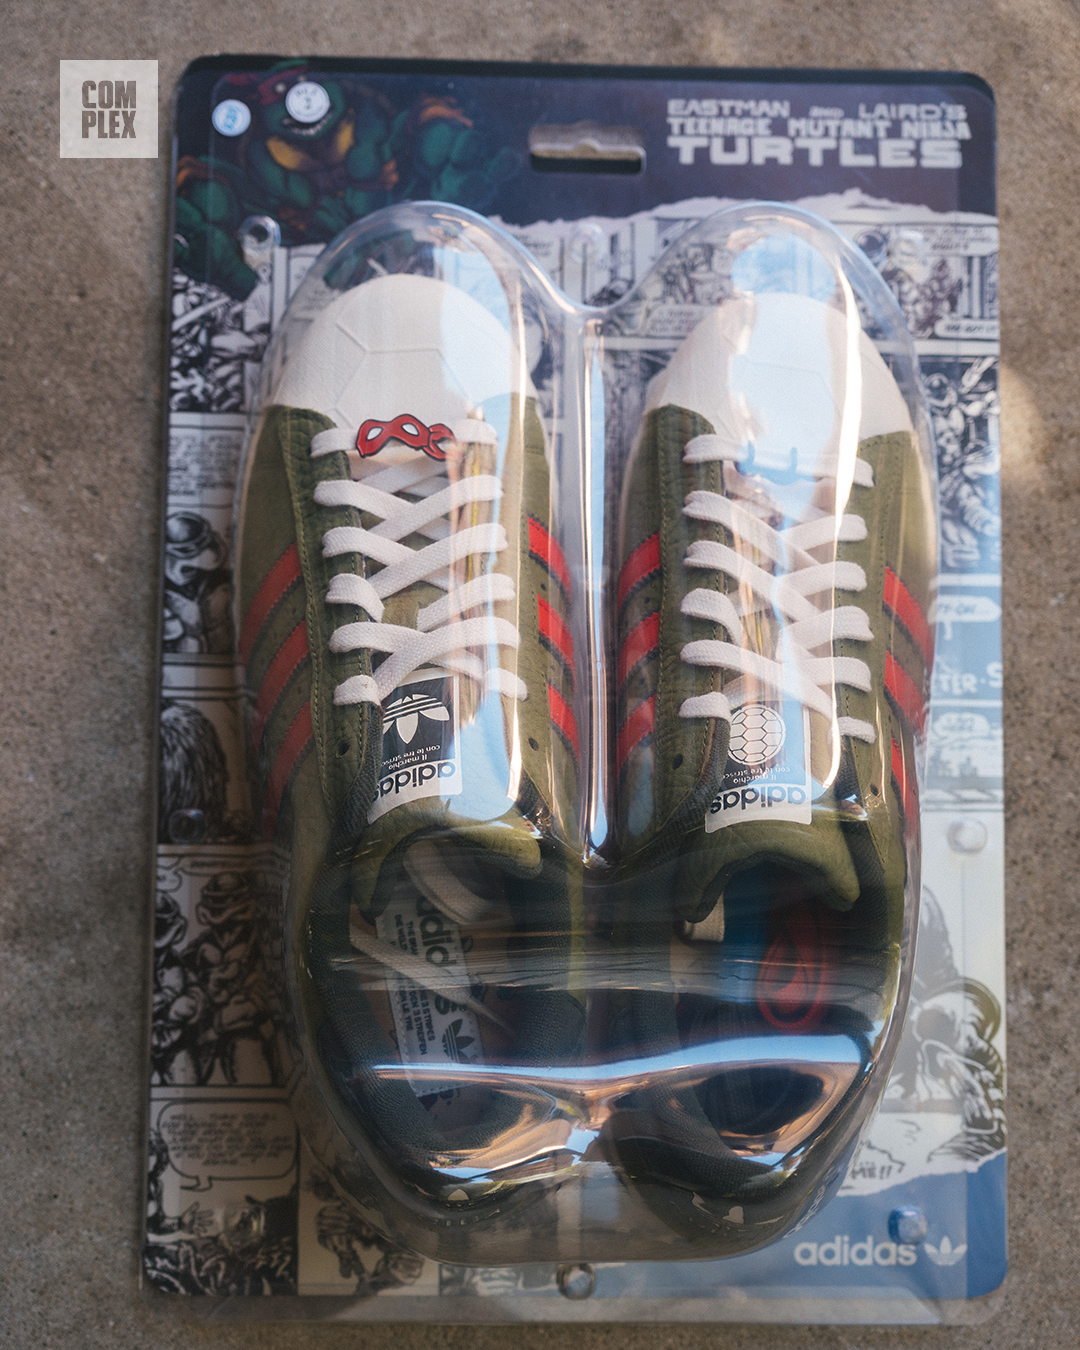 Teenage Mutant Ninja Turtles x Adidas Shelltoes Release Date Package (1)